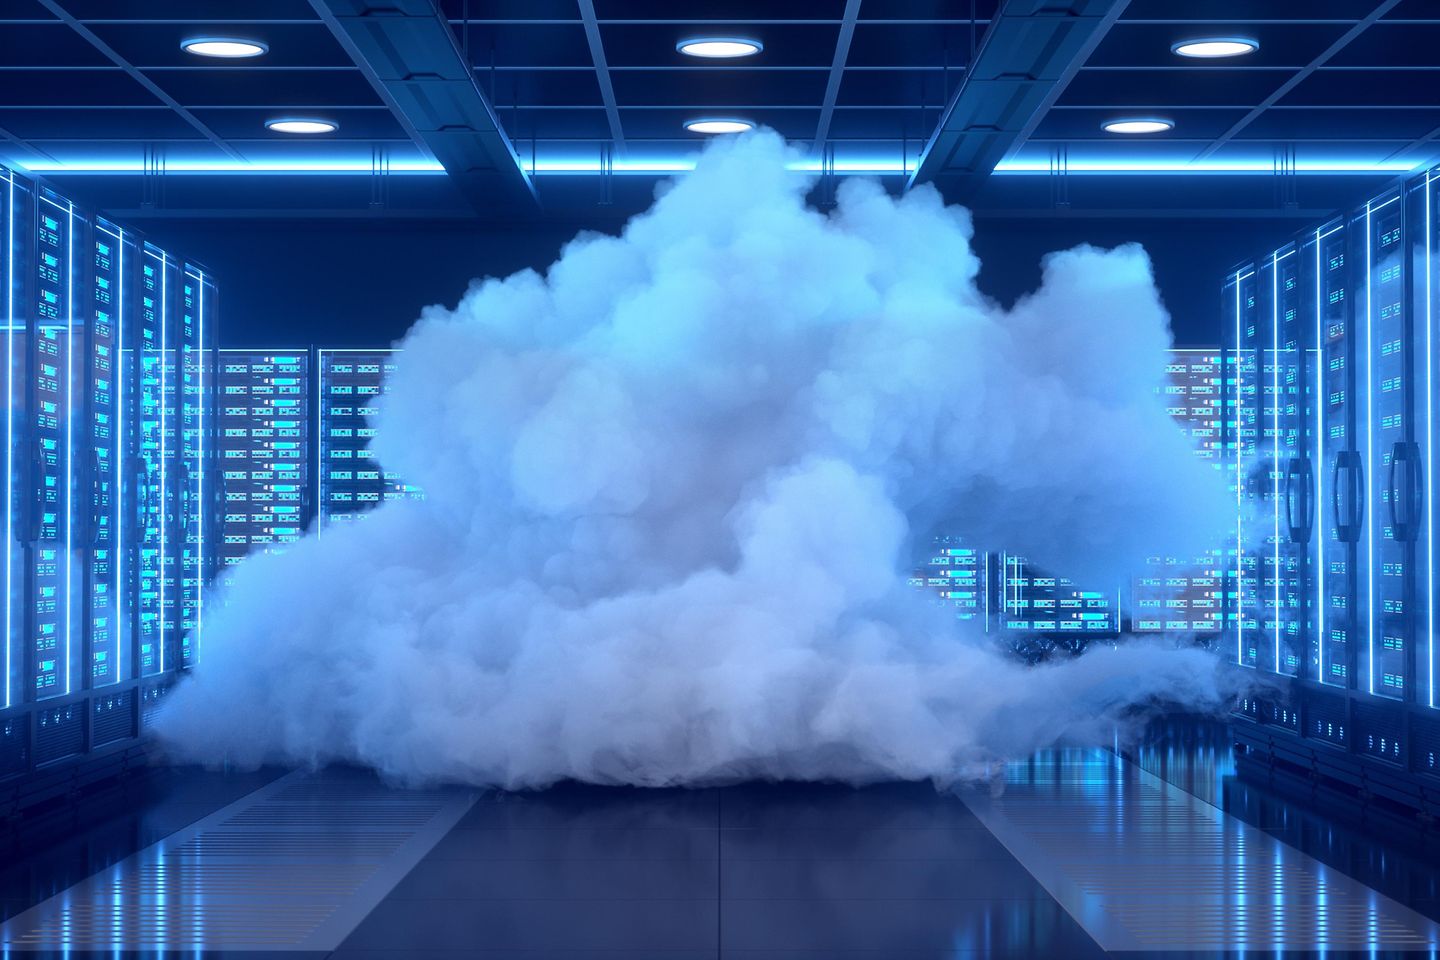 Wolke in einem Data Center